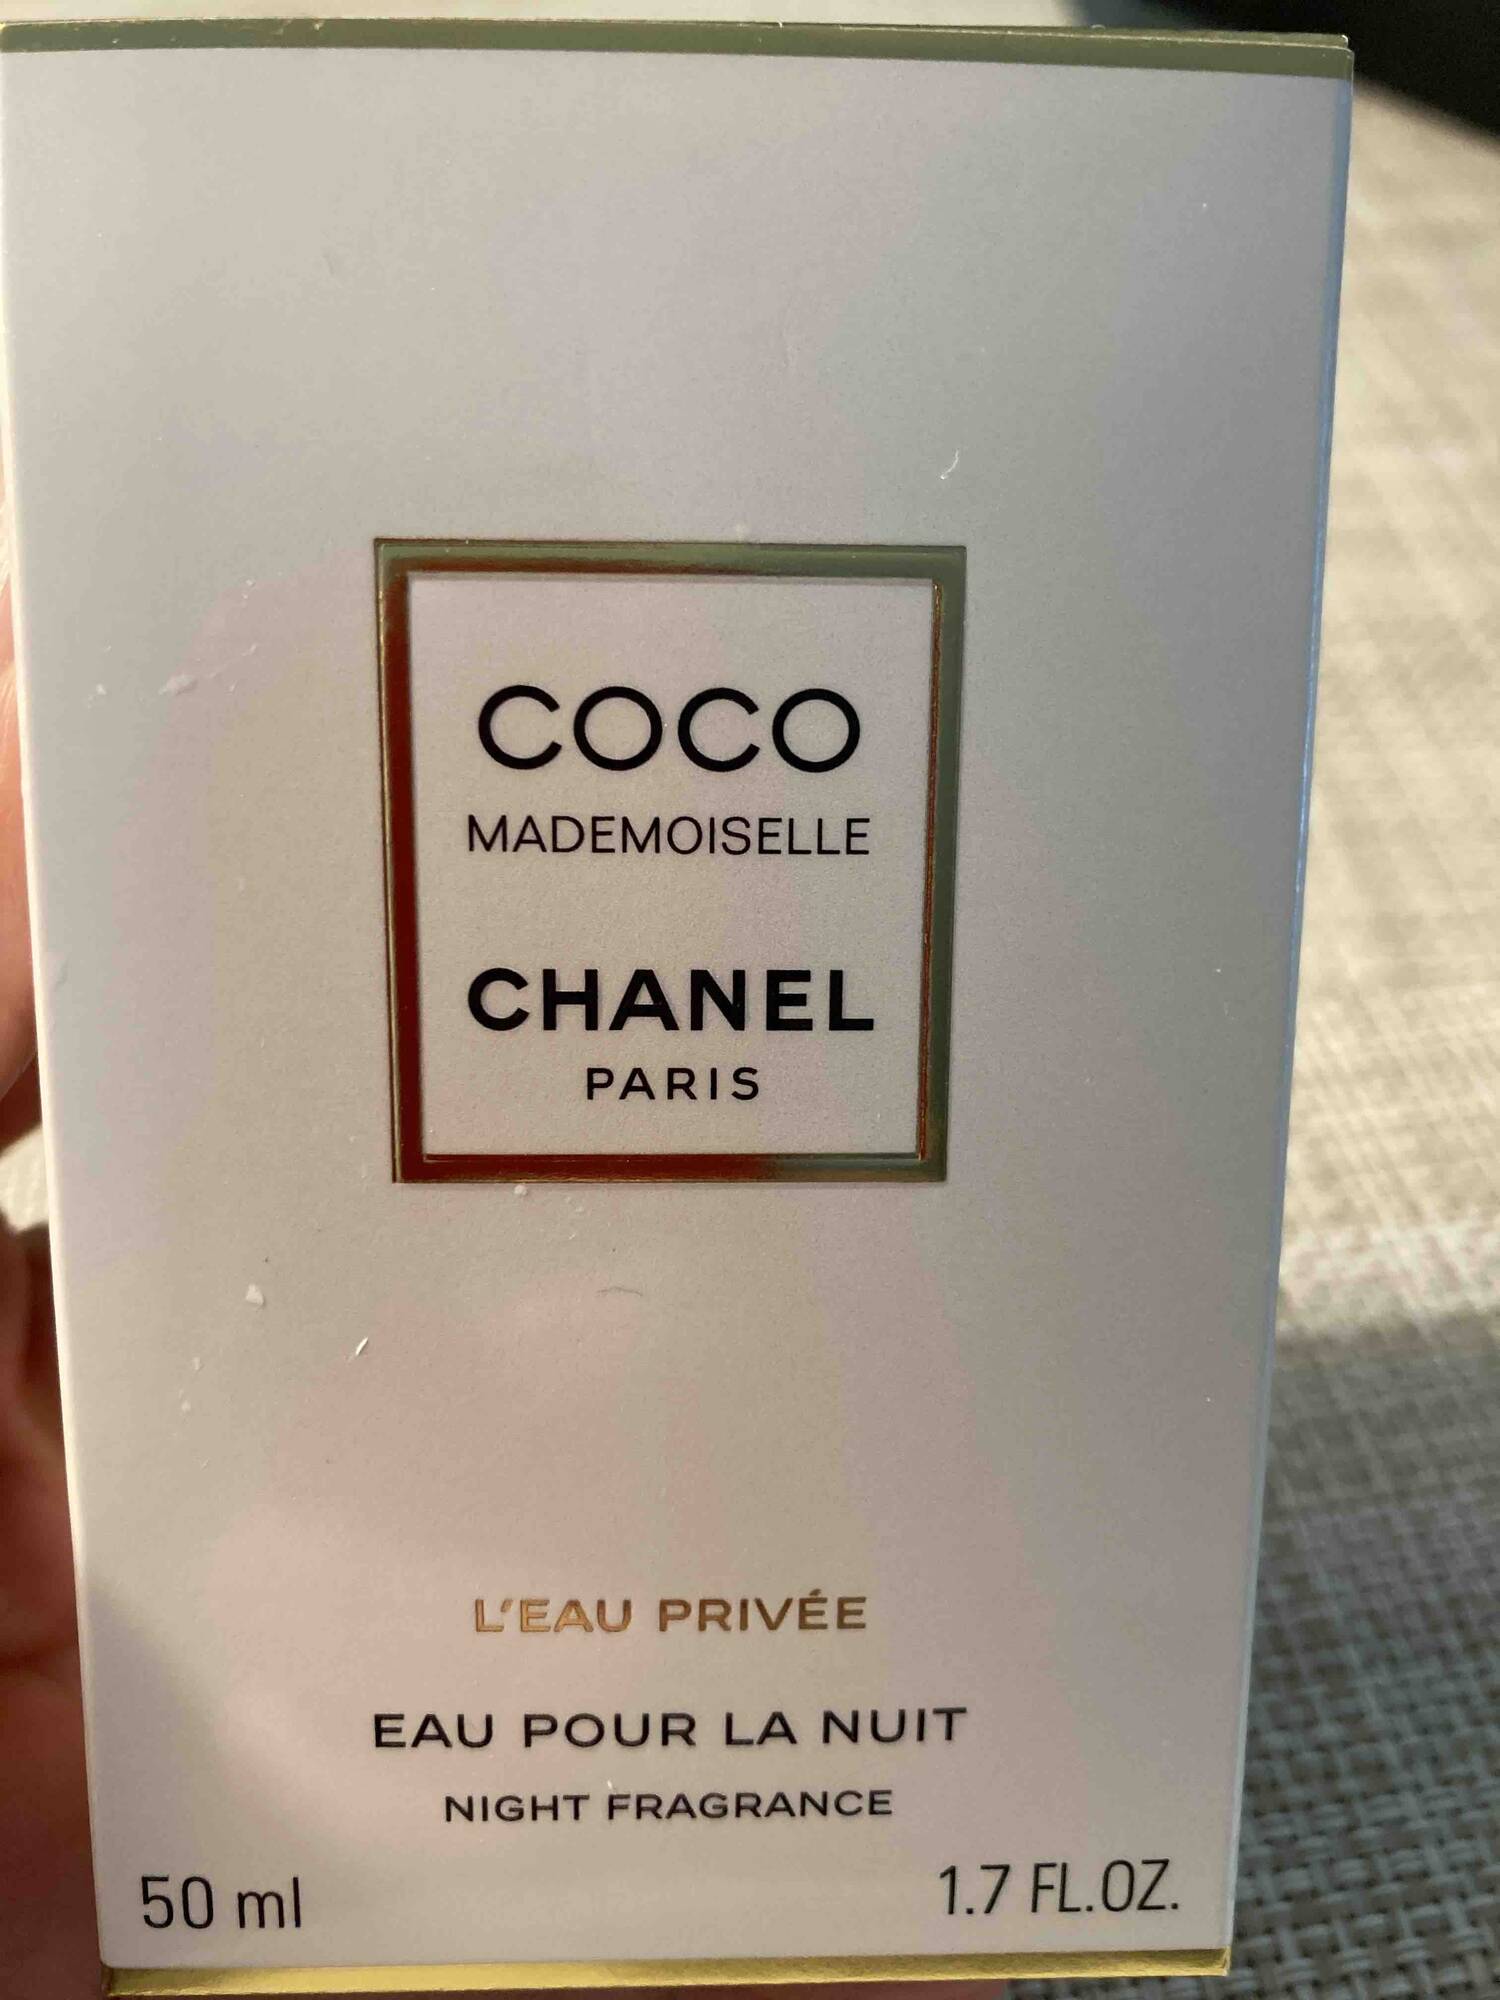 CHANEL - Coco demoiselle - L'eau privée - Eau pour la nuit